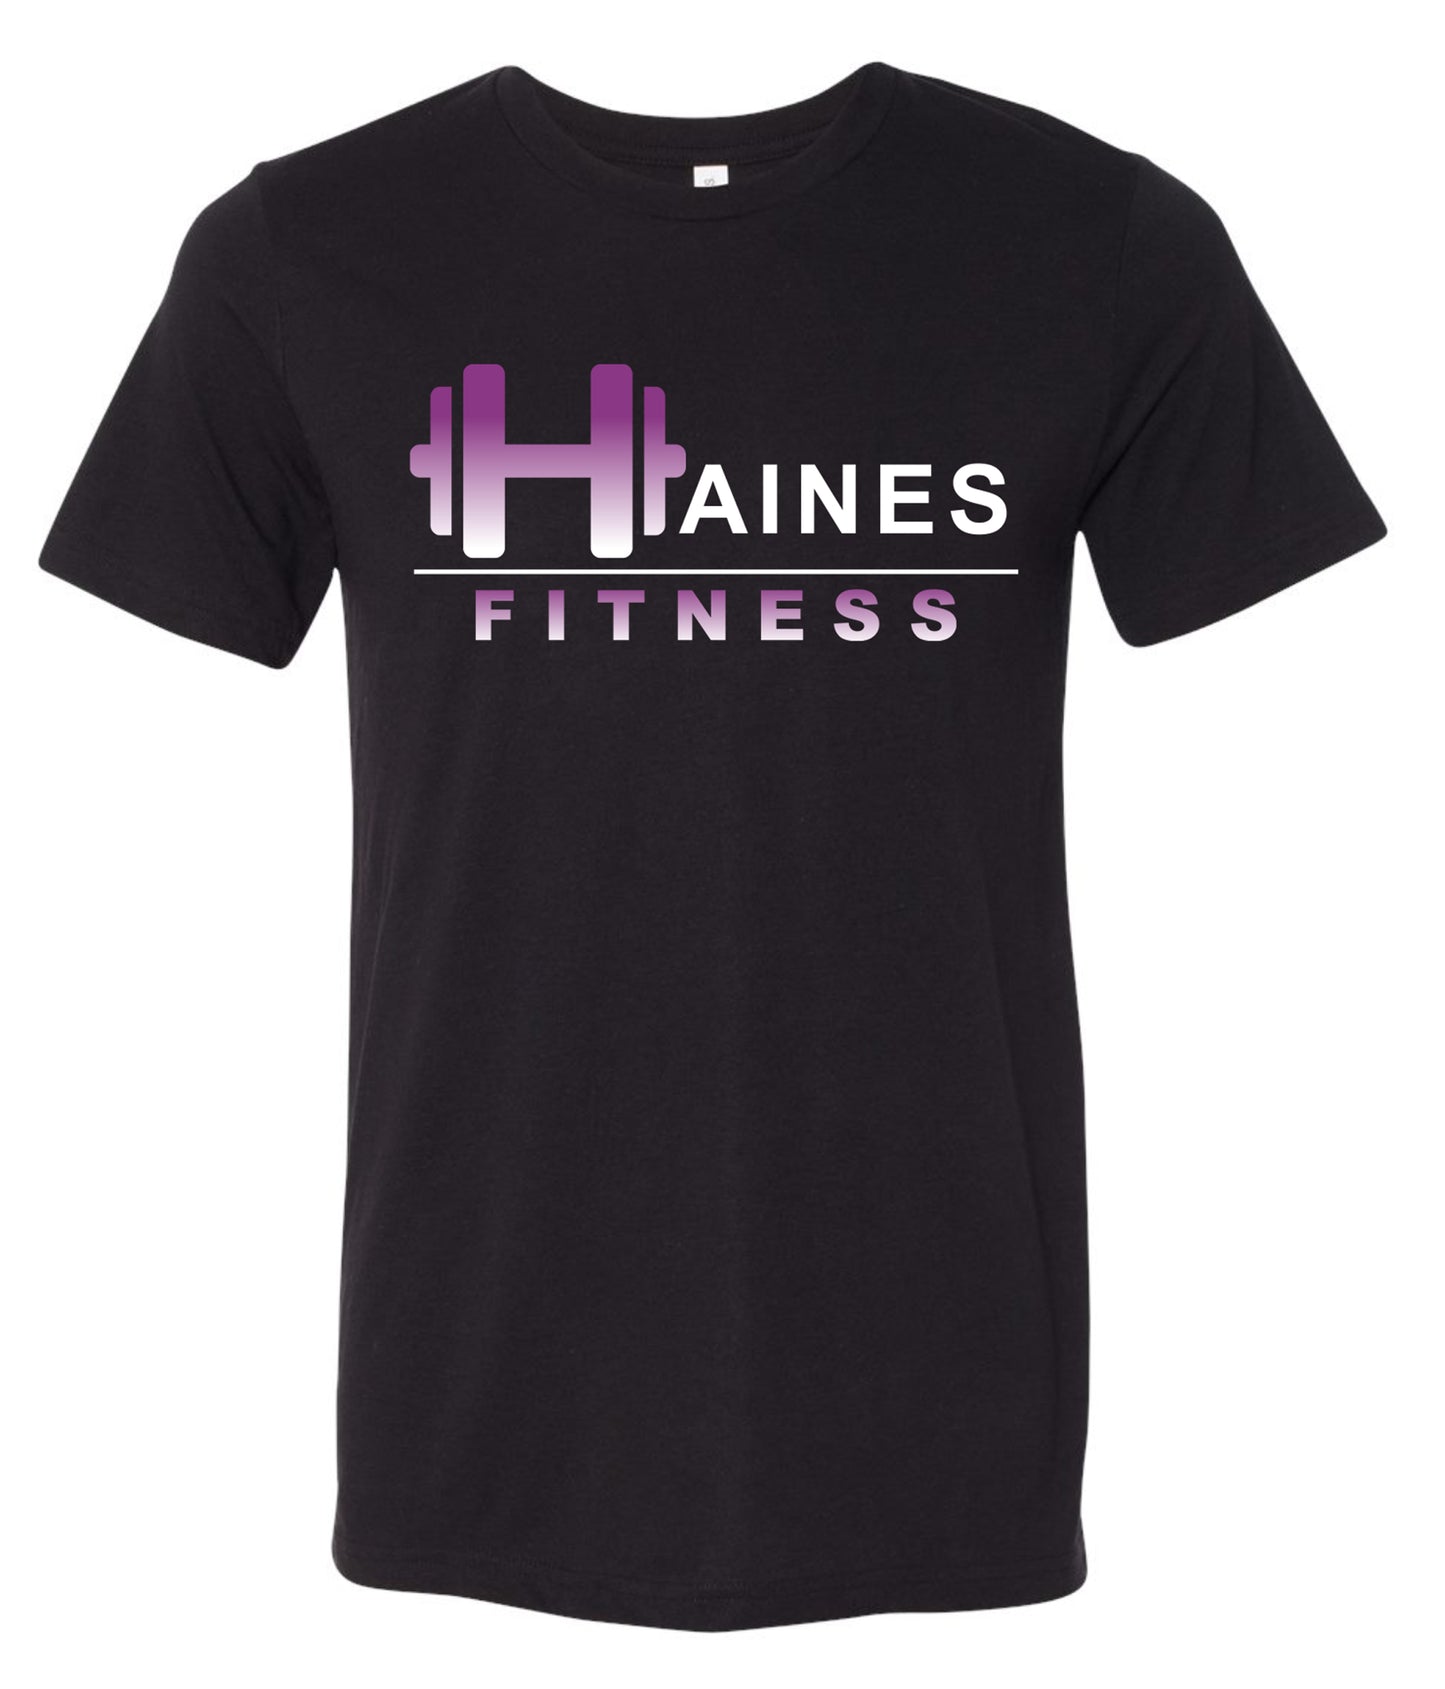 Haines Fitness Tee Black 3001